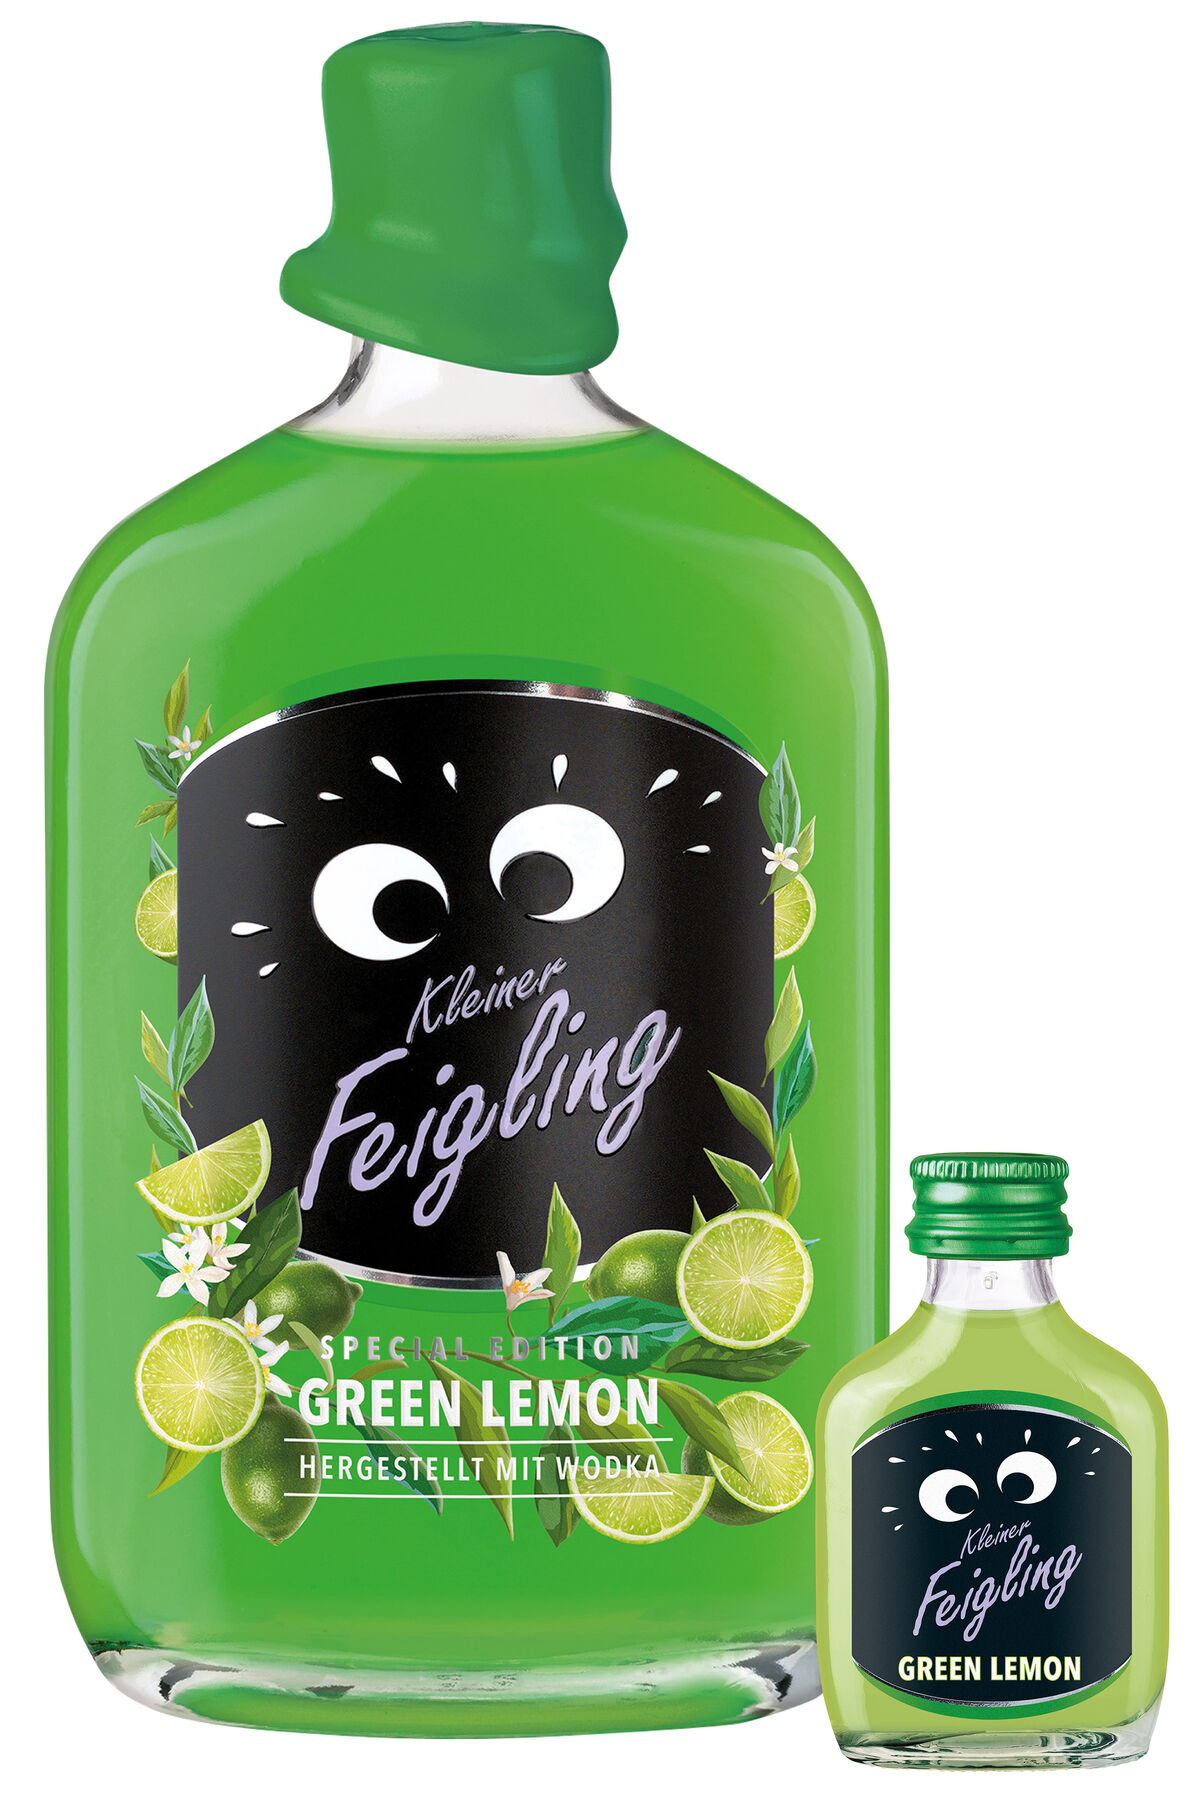 Kleiner Feigling Green Lemon - Mercurio Drinks